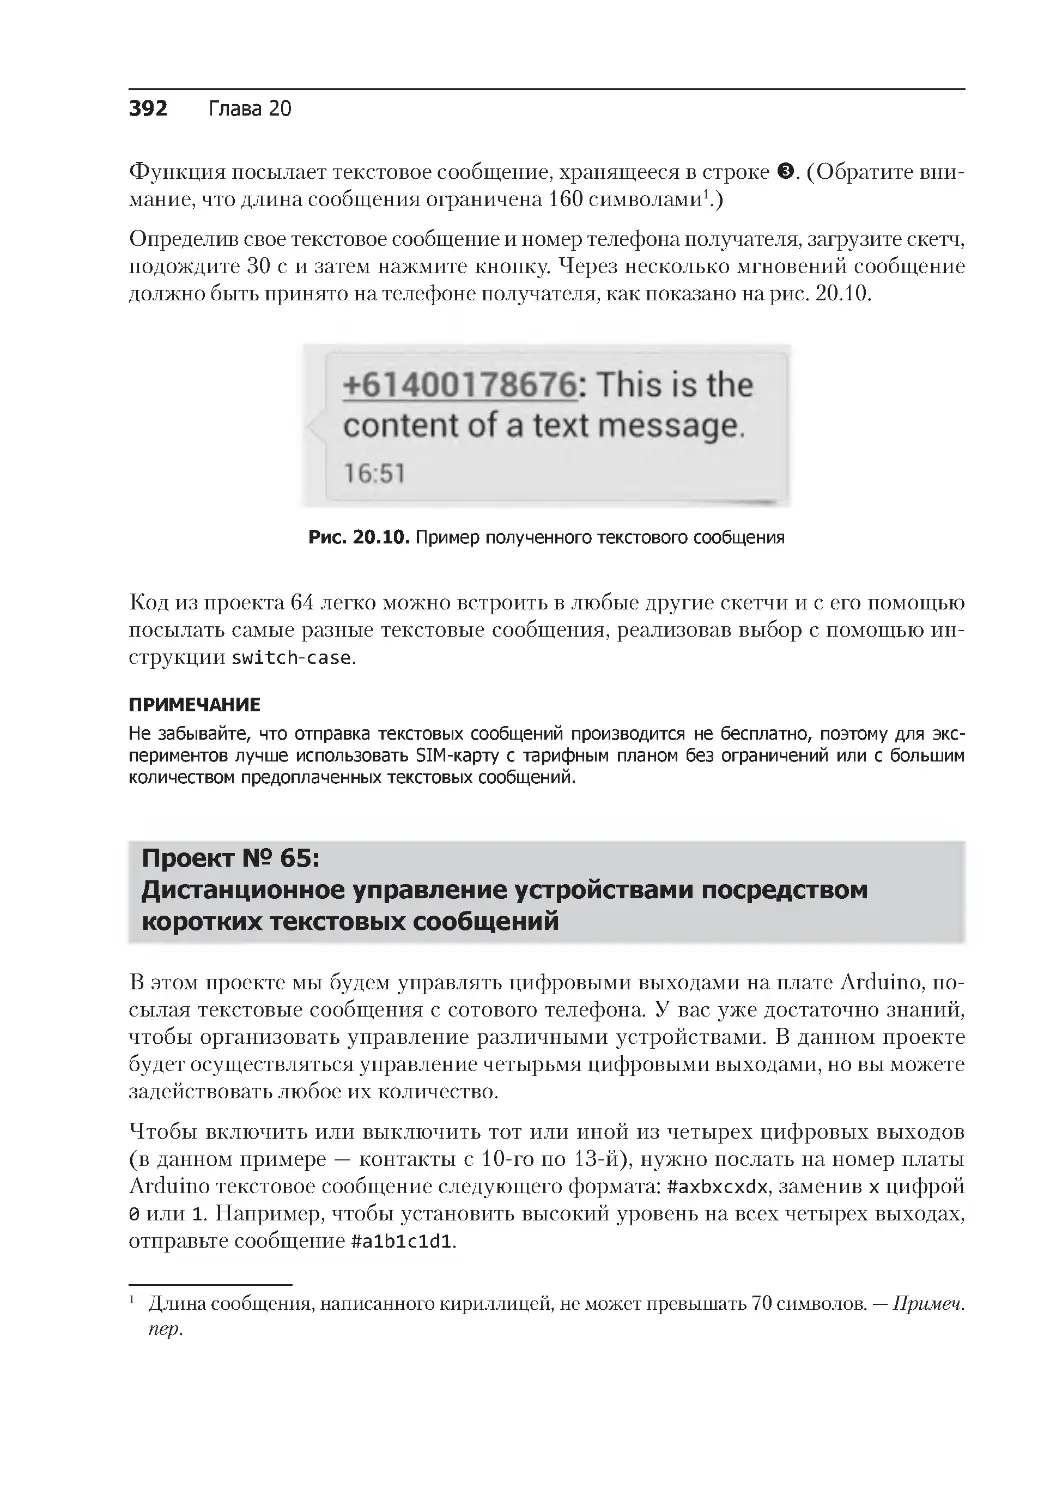 ﻿Проект № 65: 
Дистанционное управление устройствами посредством коротких текстовых сообщени